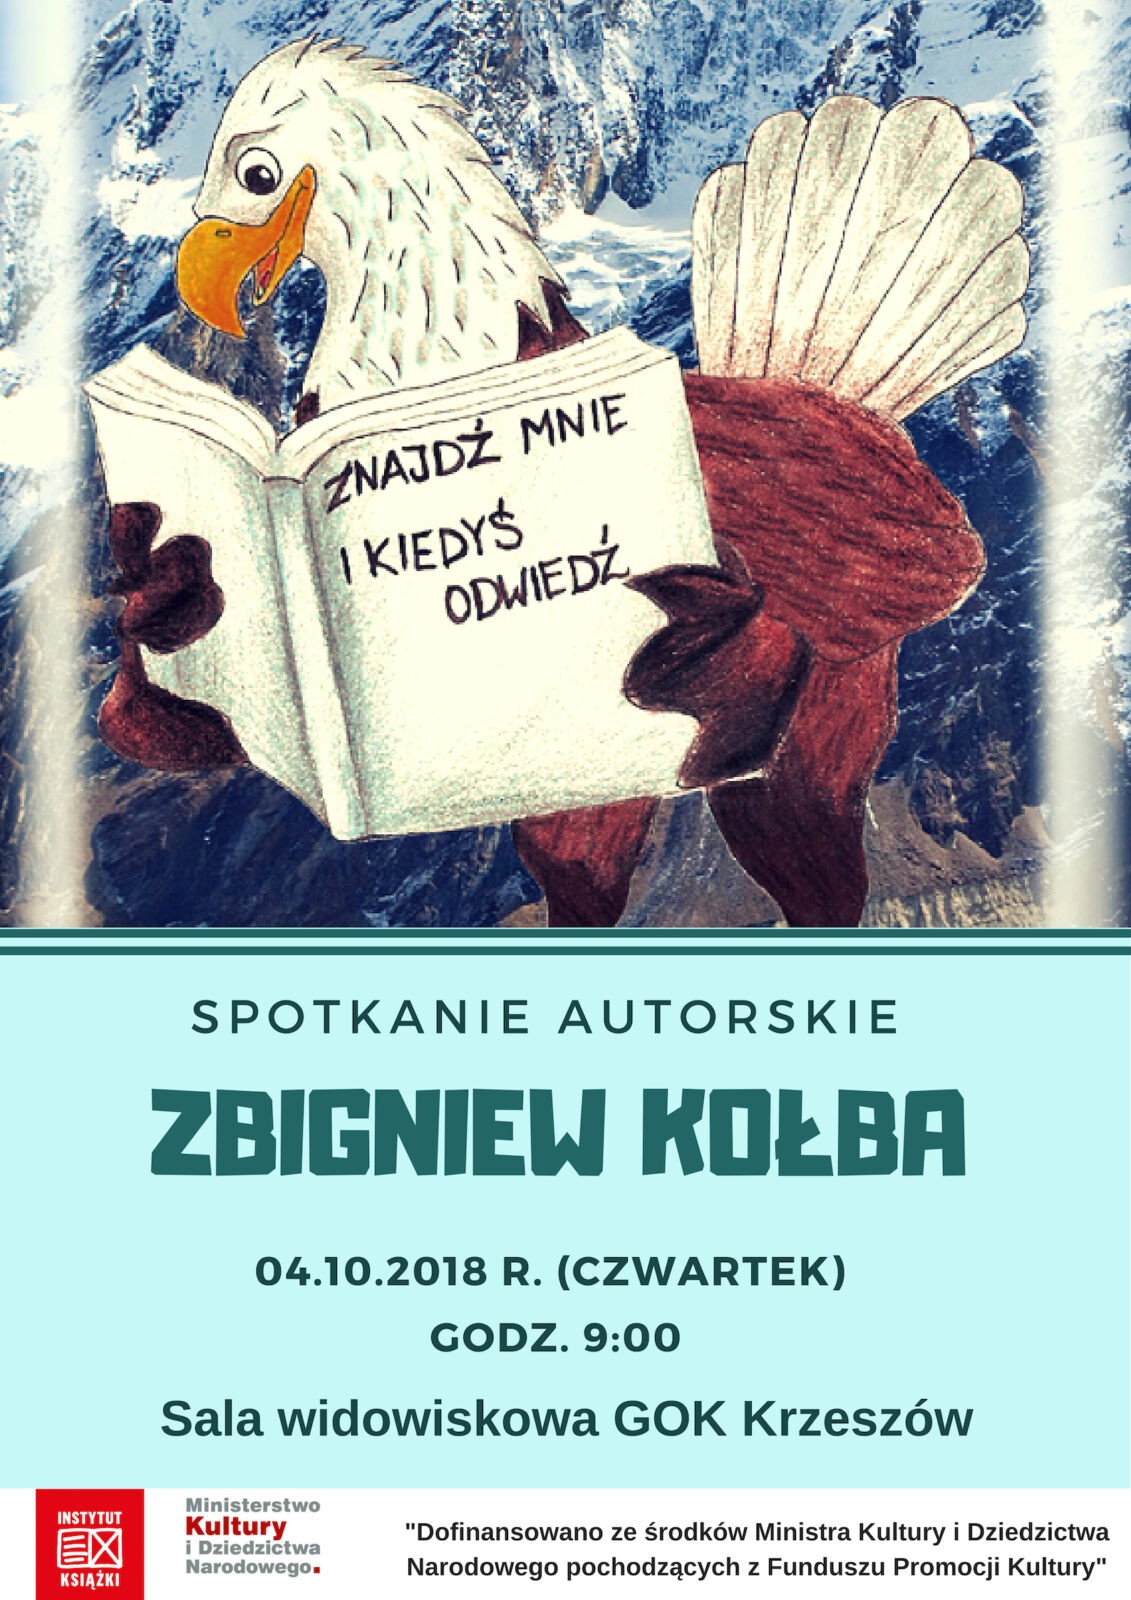 Spotkanie autorskie Zbigniew Kołba